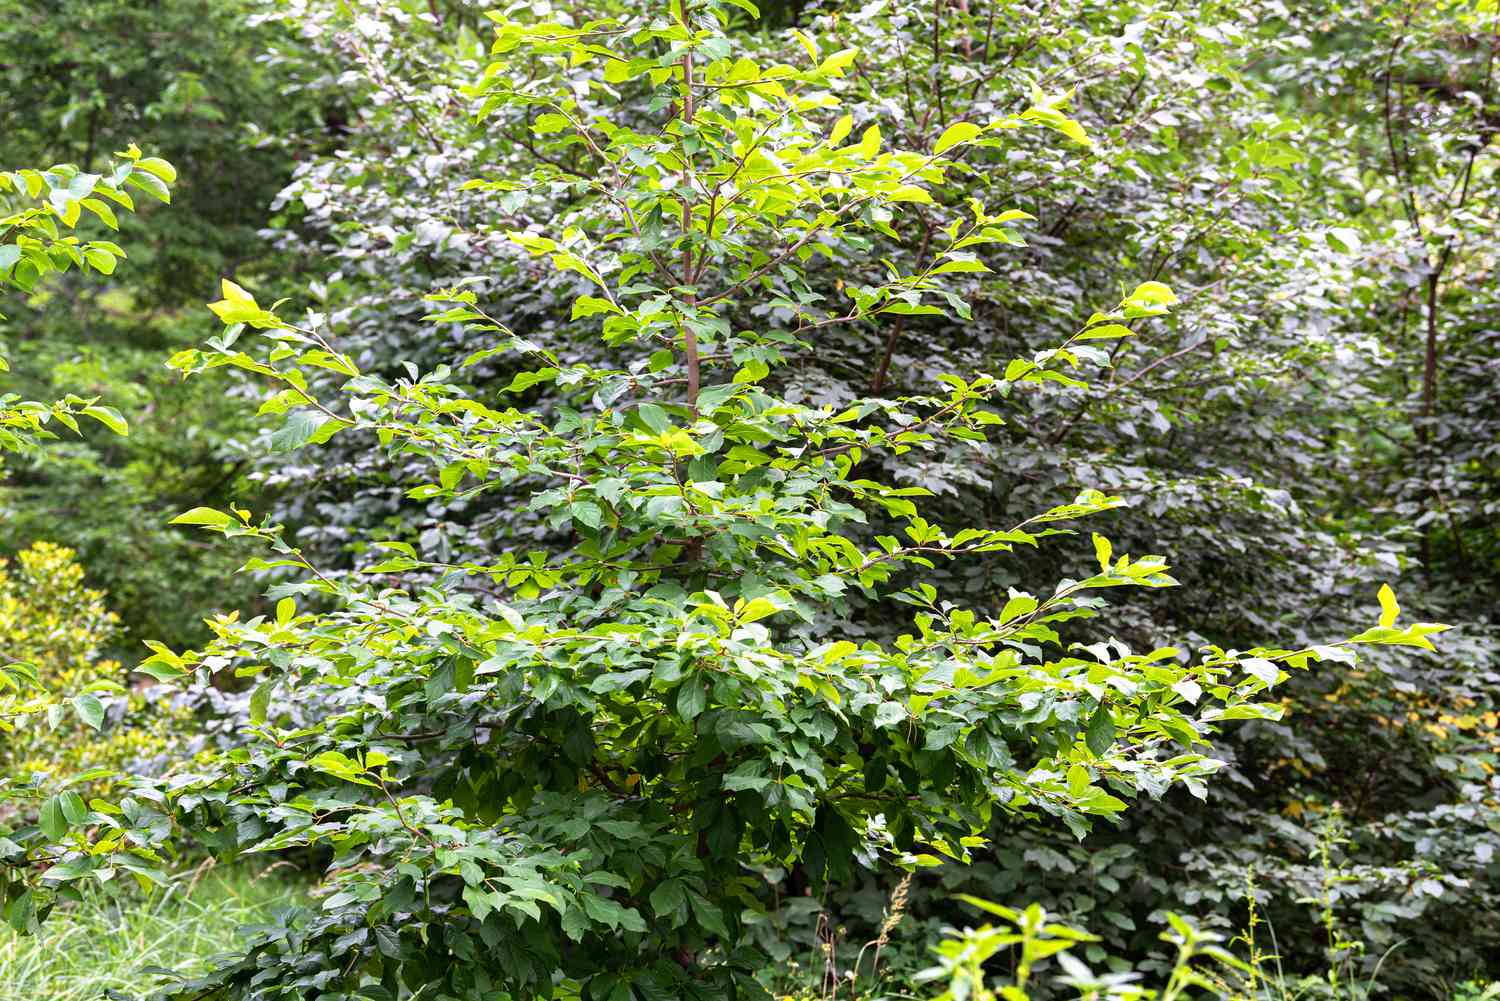 Gommier noir aux feuilles vertes brillantes au milieu d'une zone boisée